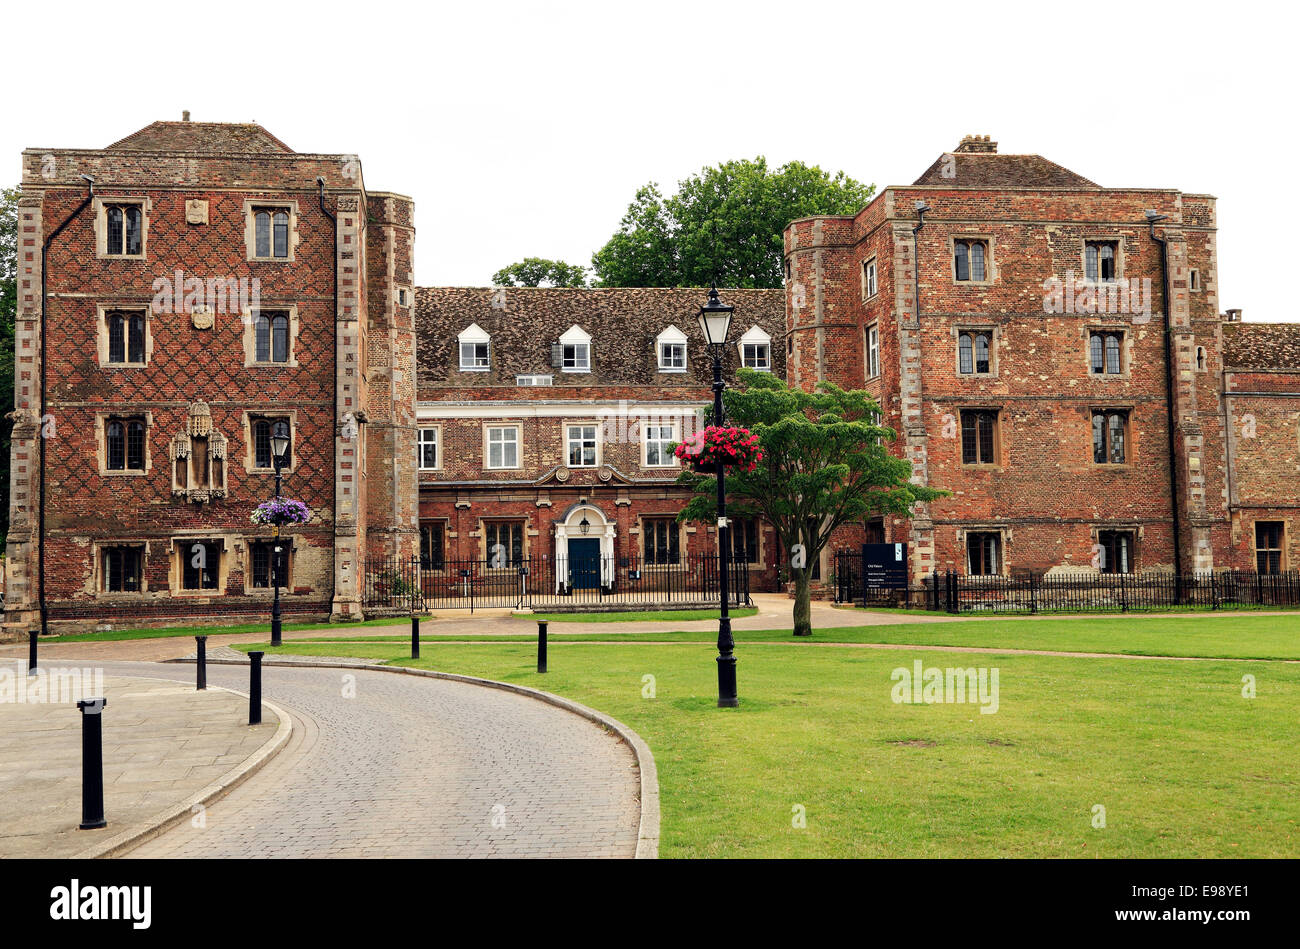 Ely, du xvie siècle, ancien palais des évêques, rois maintenant sixième école 6ème collège, Cambridgeshire, Angleterre, Royaume-Uni Banque D'Images